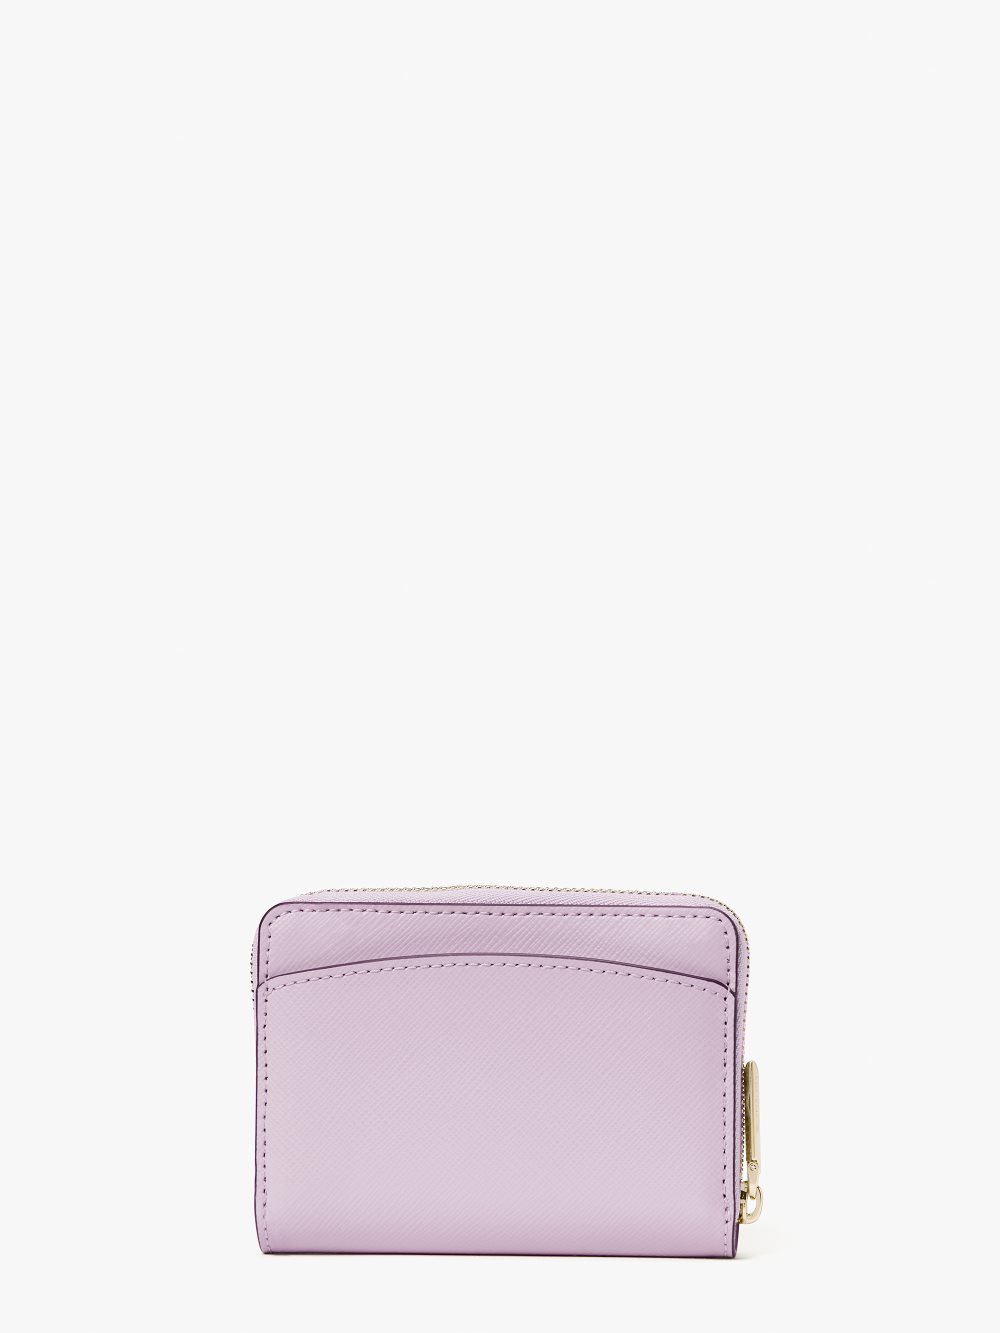 Women's violet mist spencer zip cardholder | Kate Spade